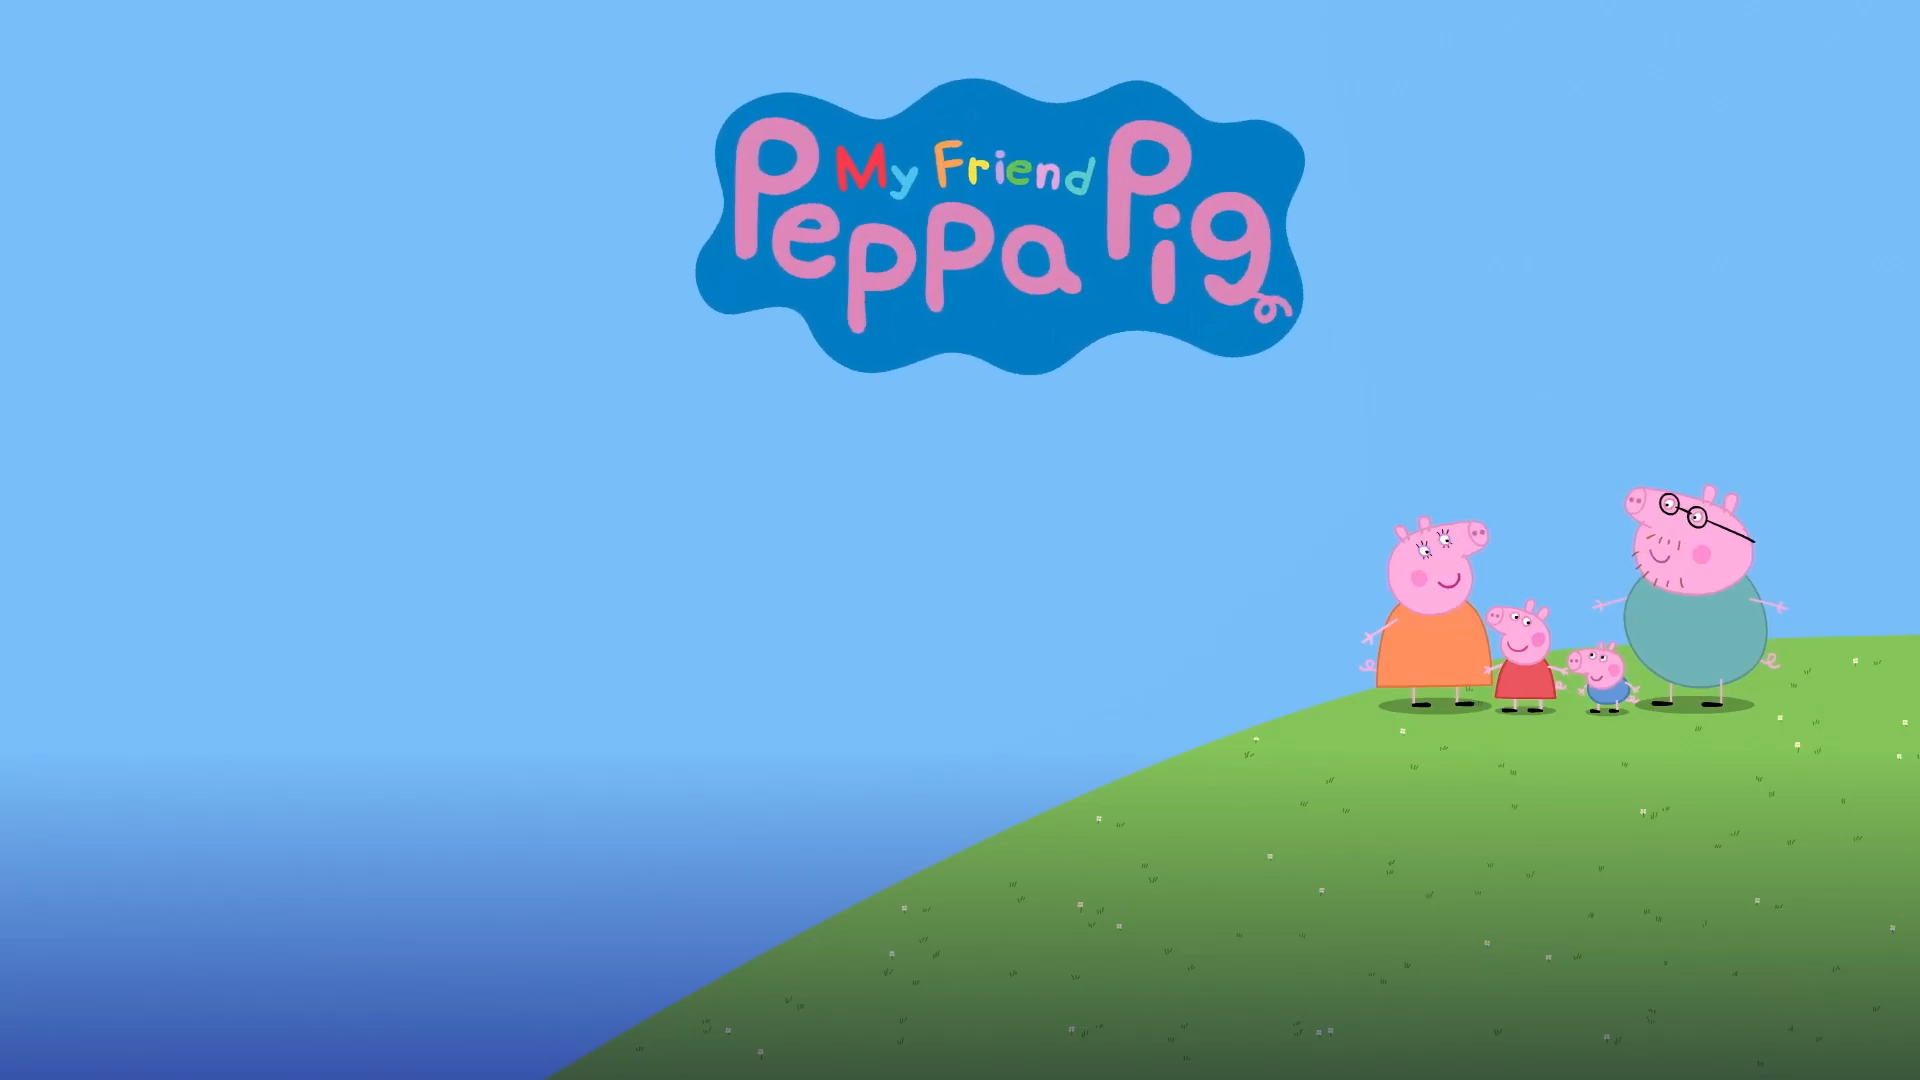 My friend Peppa Pig игра. Свинка Пеппа ПС 4. My friend Peppa Pig PS 4. Игра Свинка Пеппа на пс4. Peppa friends